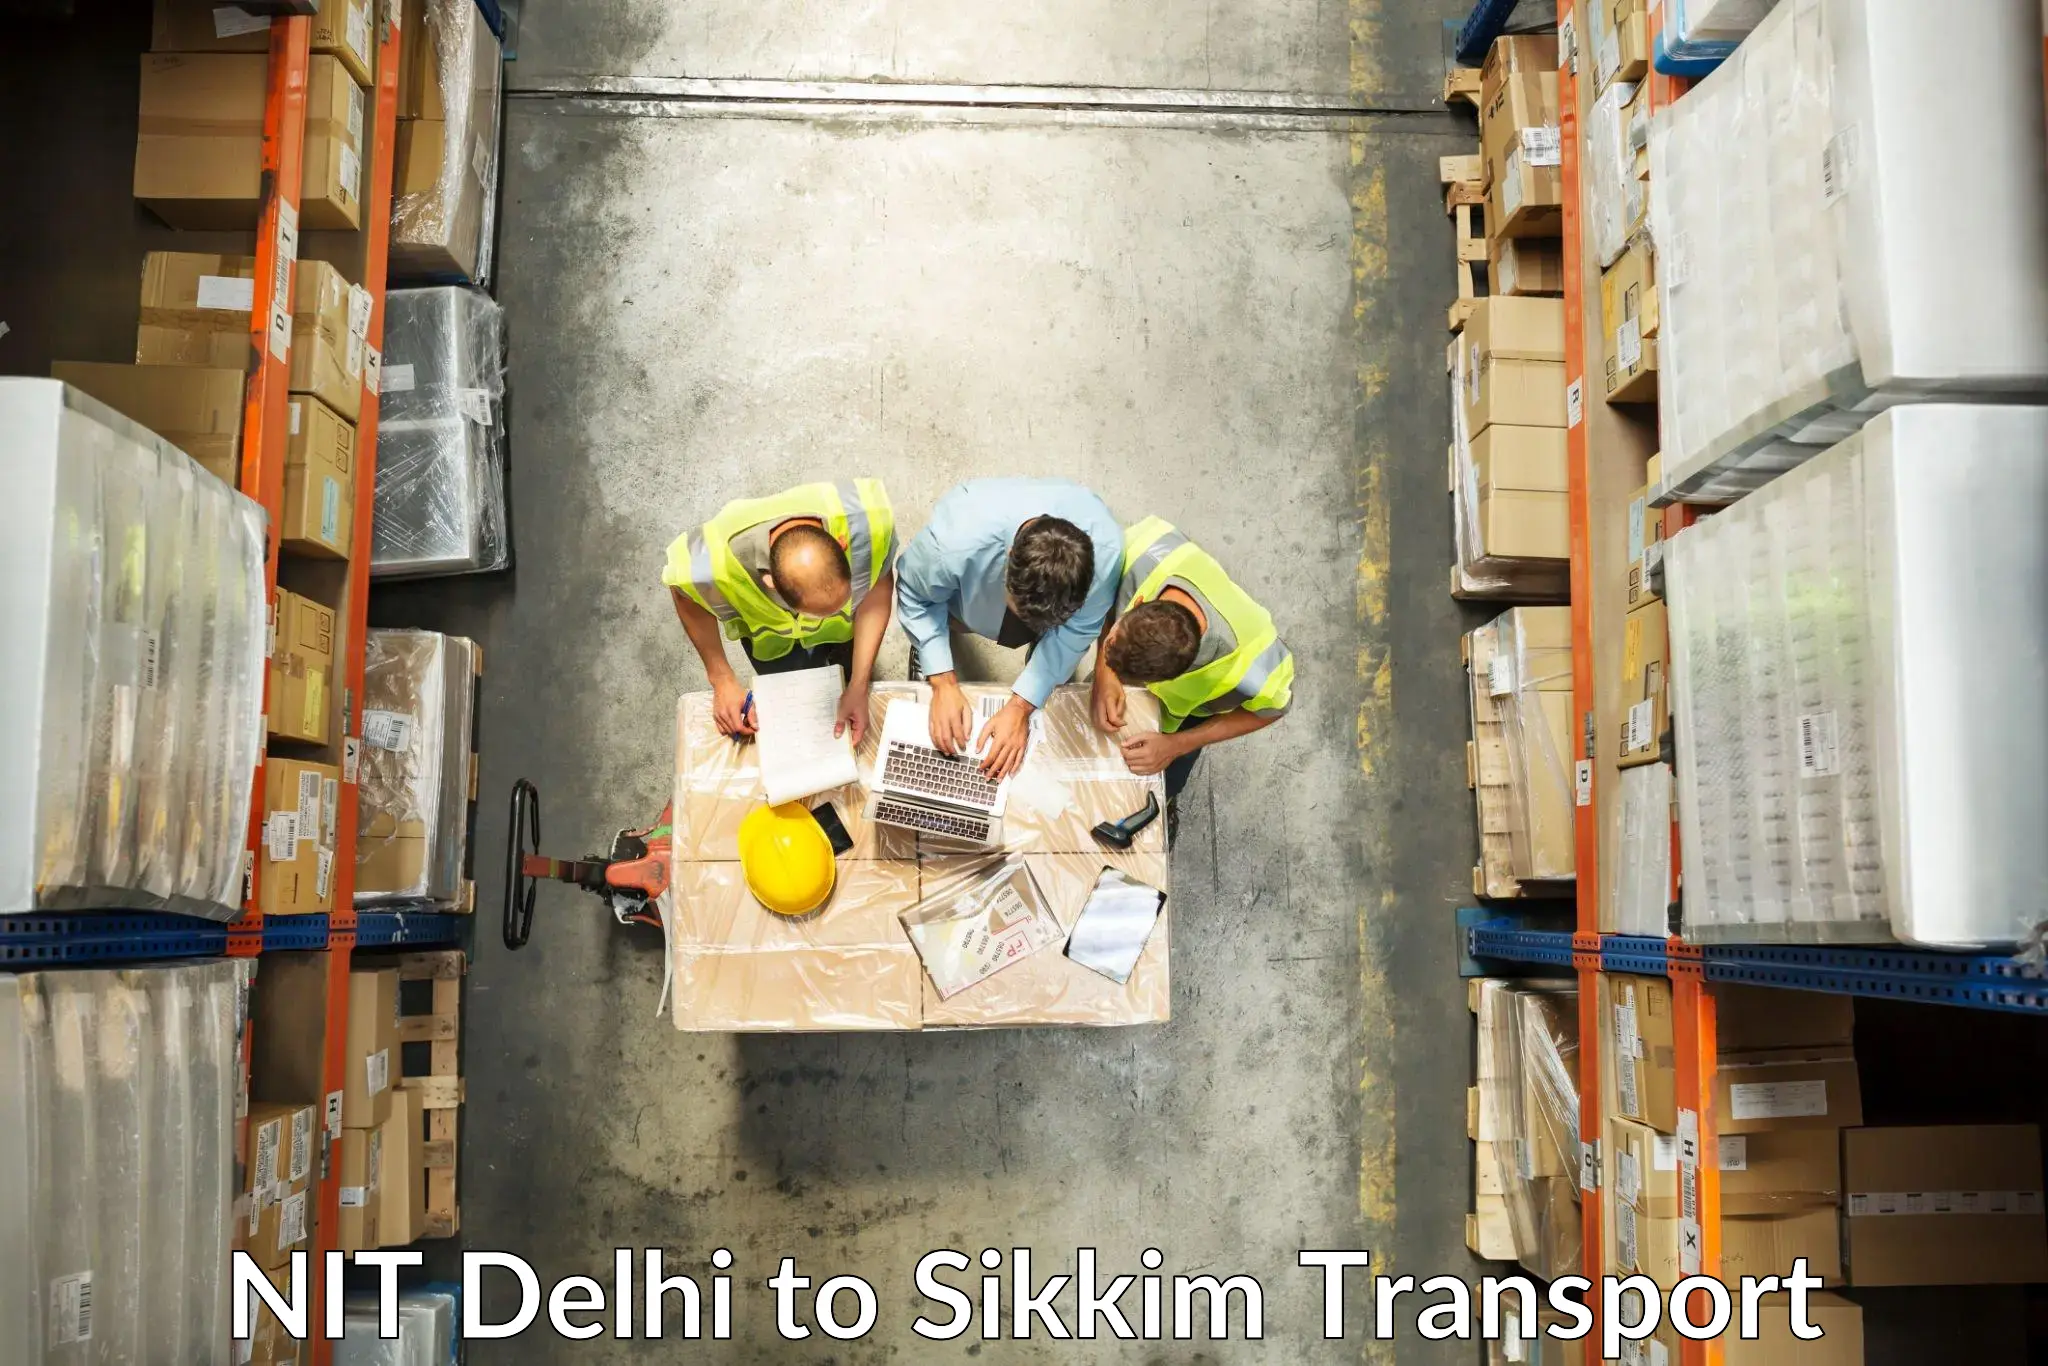 Bike shipping service NIT Delhi to Sikkim